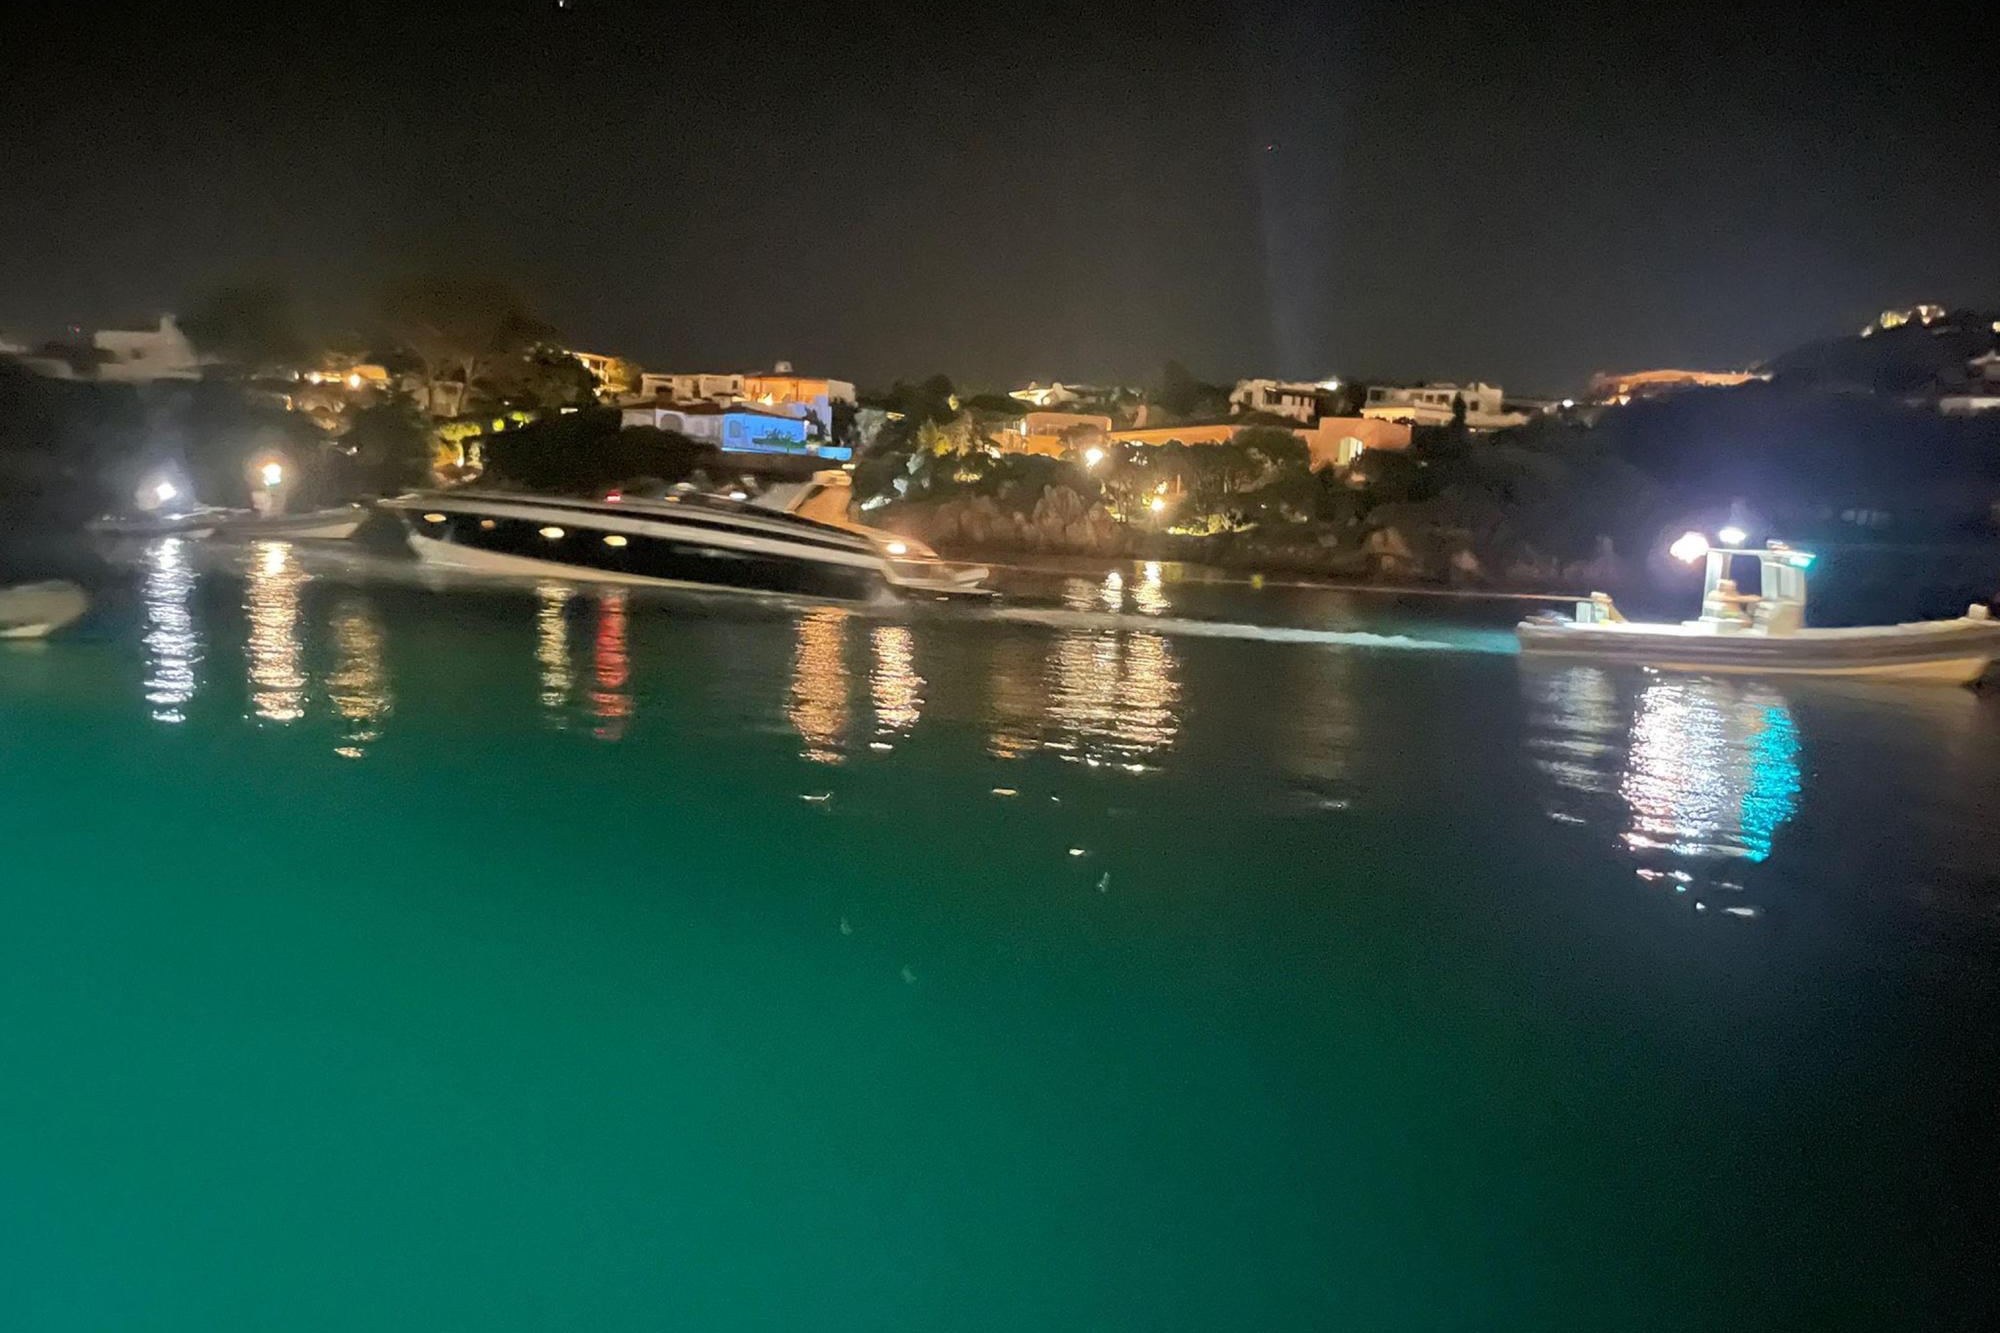 ++ Yacht su scogli a Porto Cervo, un morto e 6 feriti ++